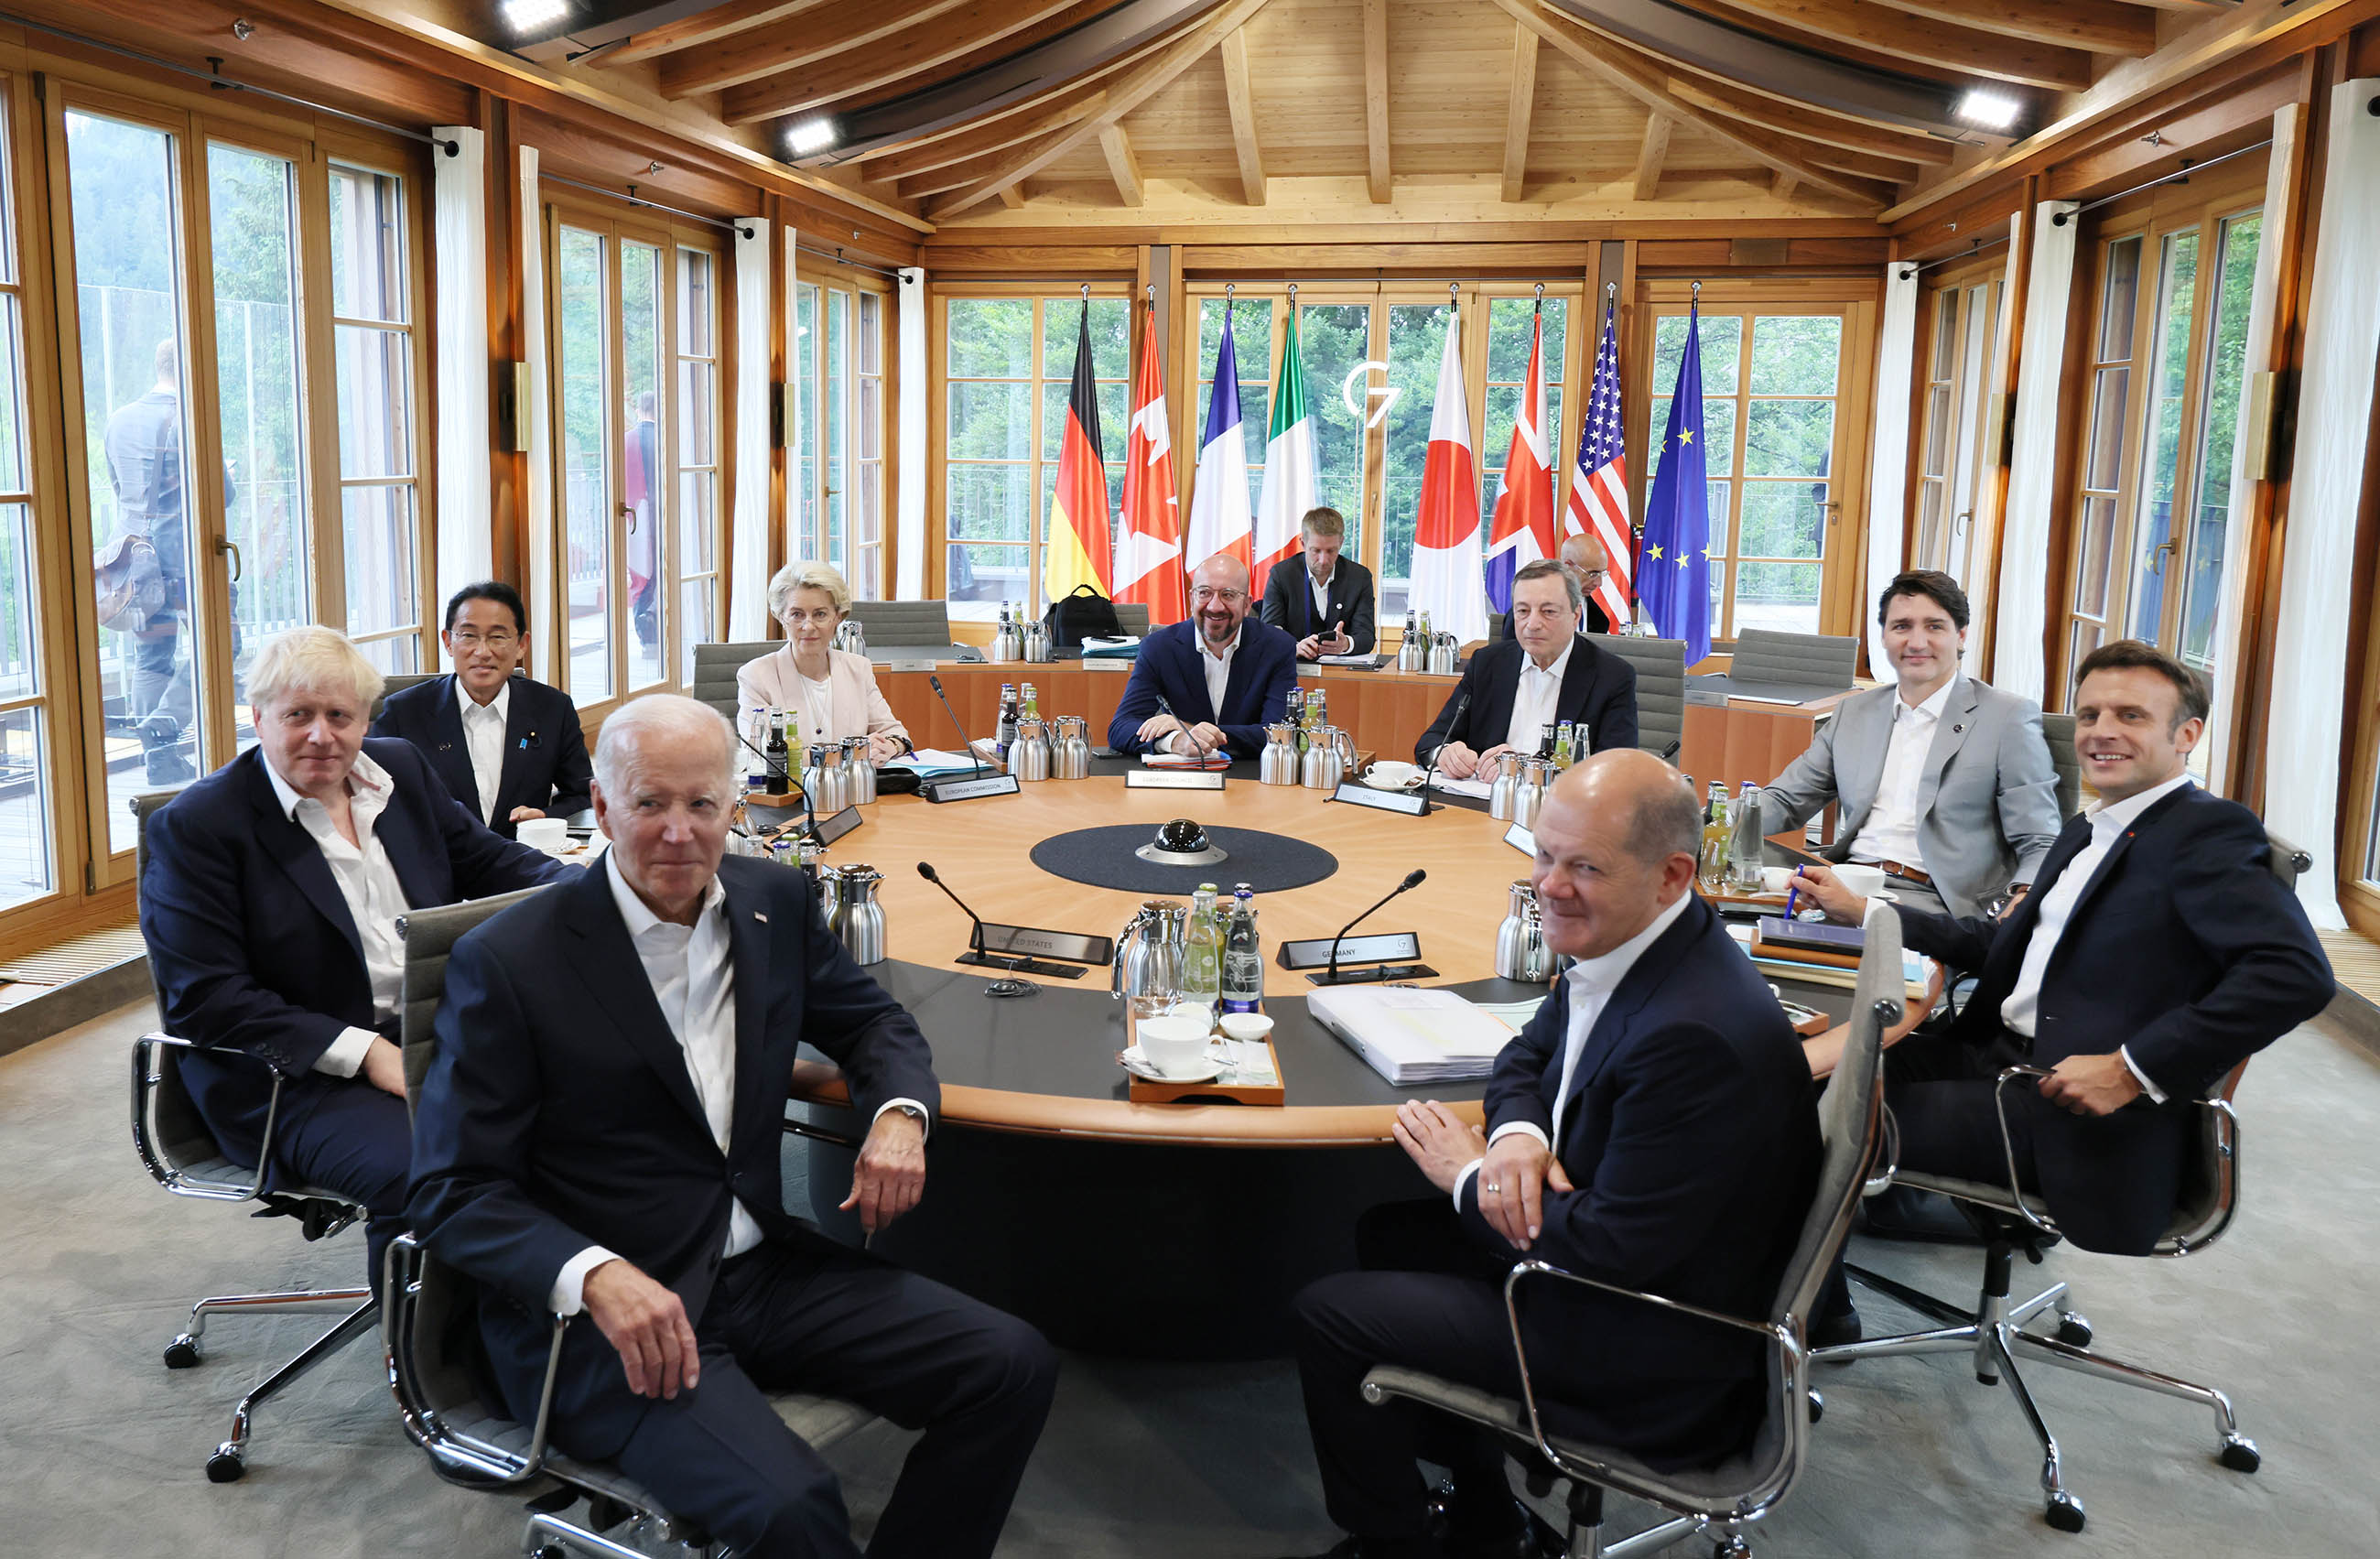 七国集团(G7)埃尔茂峰会及与各国的首脑会谈 -第3天- 以及访问西班牙